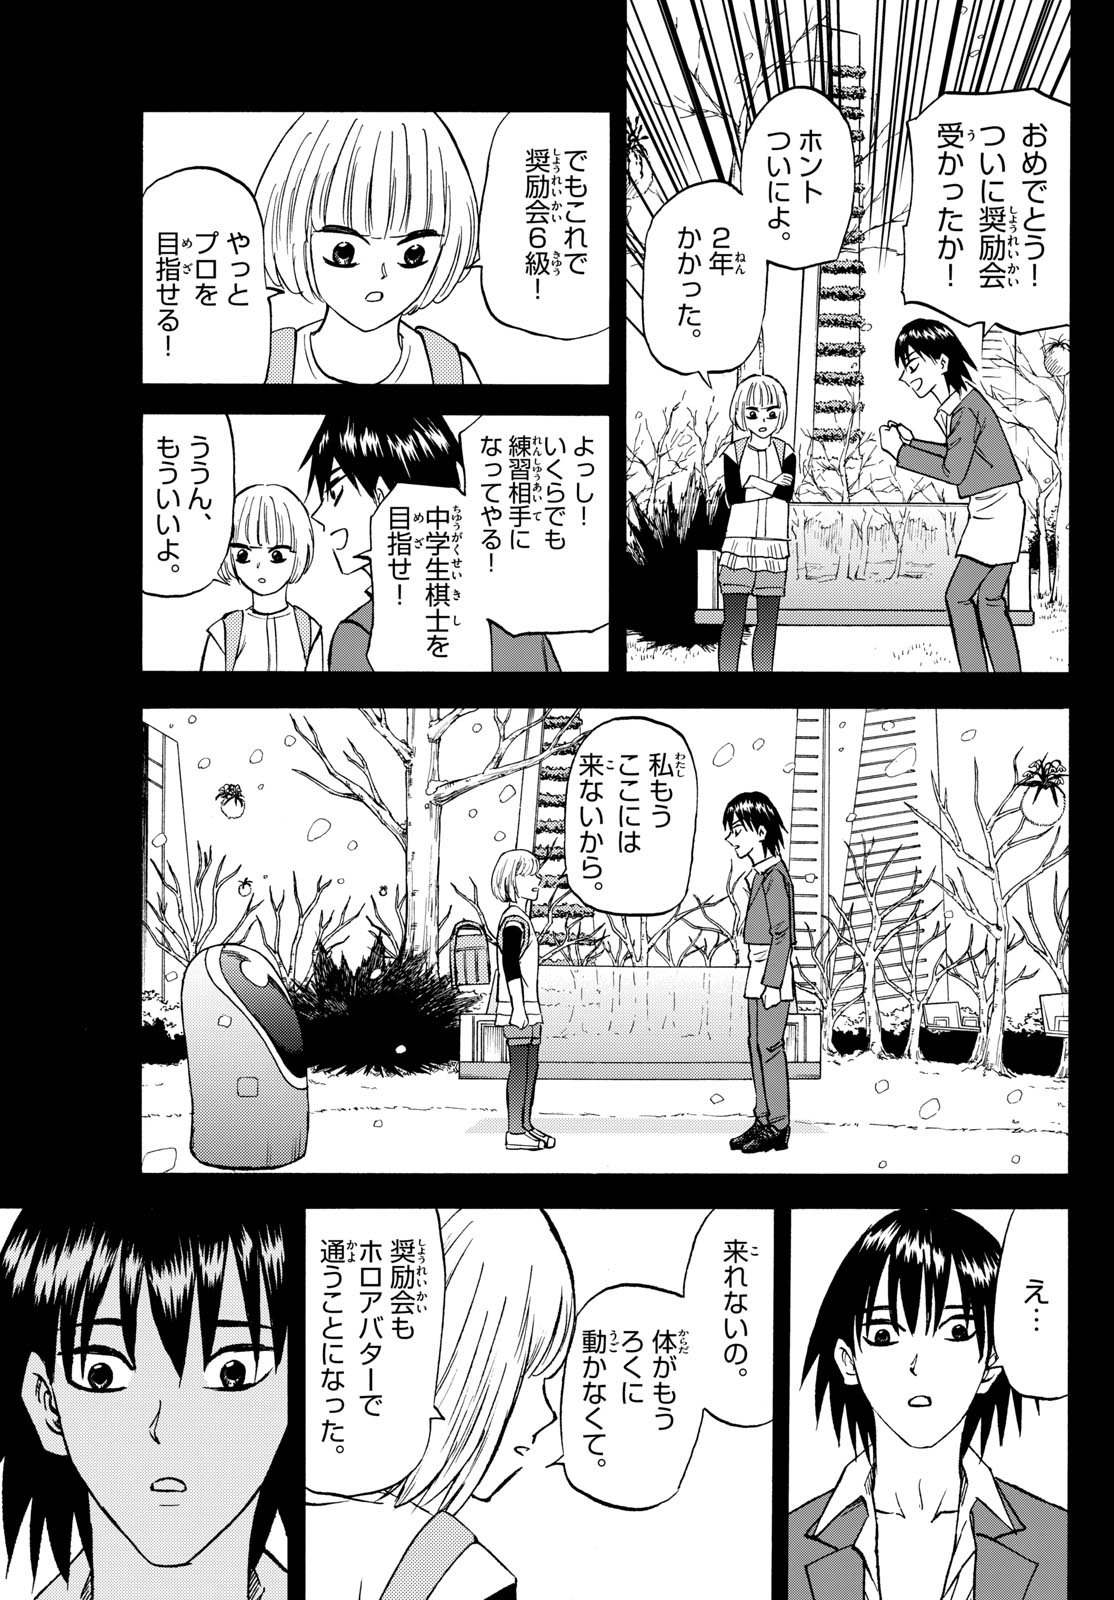 Tatsu to Ichigo - Chapter 193 - Page 13